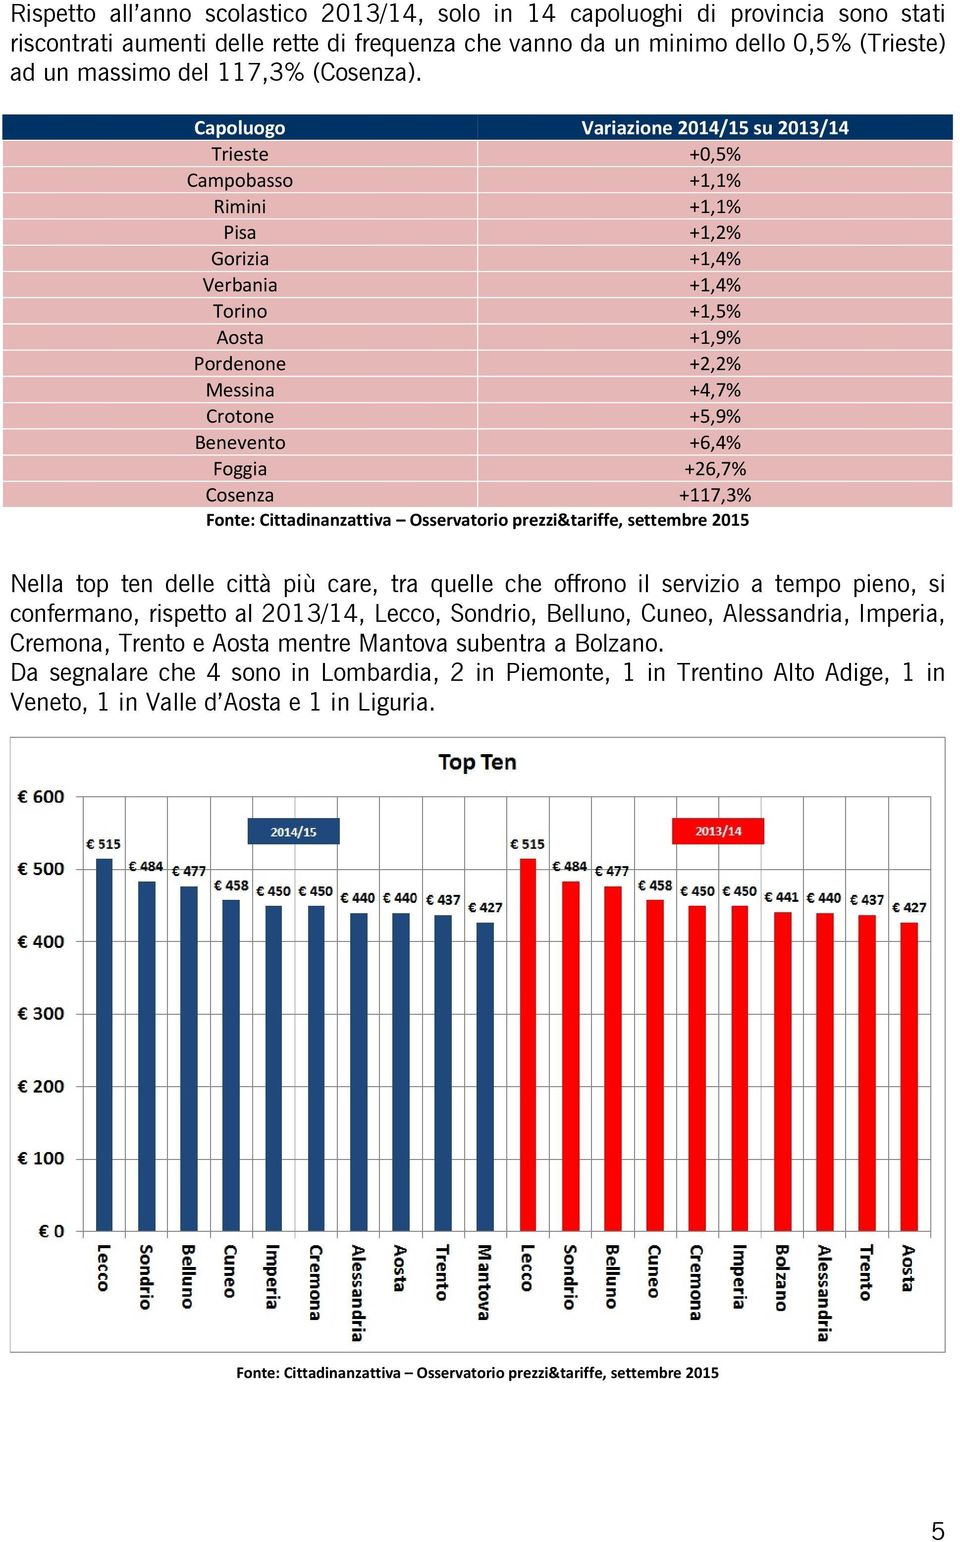 Capoluogo Variazione 2014/15 su 2013/14 Trieste +0,5% Campobasso +1,1% Rimini +1,1% Pisa +1,2% Gorizia +1,4% Verbania +1,4% Torino +1,5% Aosta +1,9% Pordenone +2,2% Messina +4,7% Crotone +5,9%